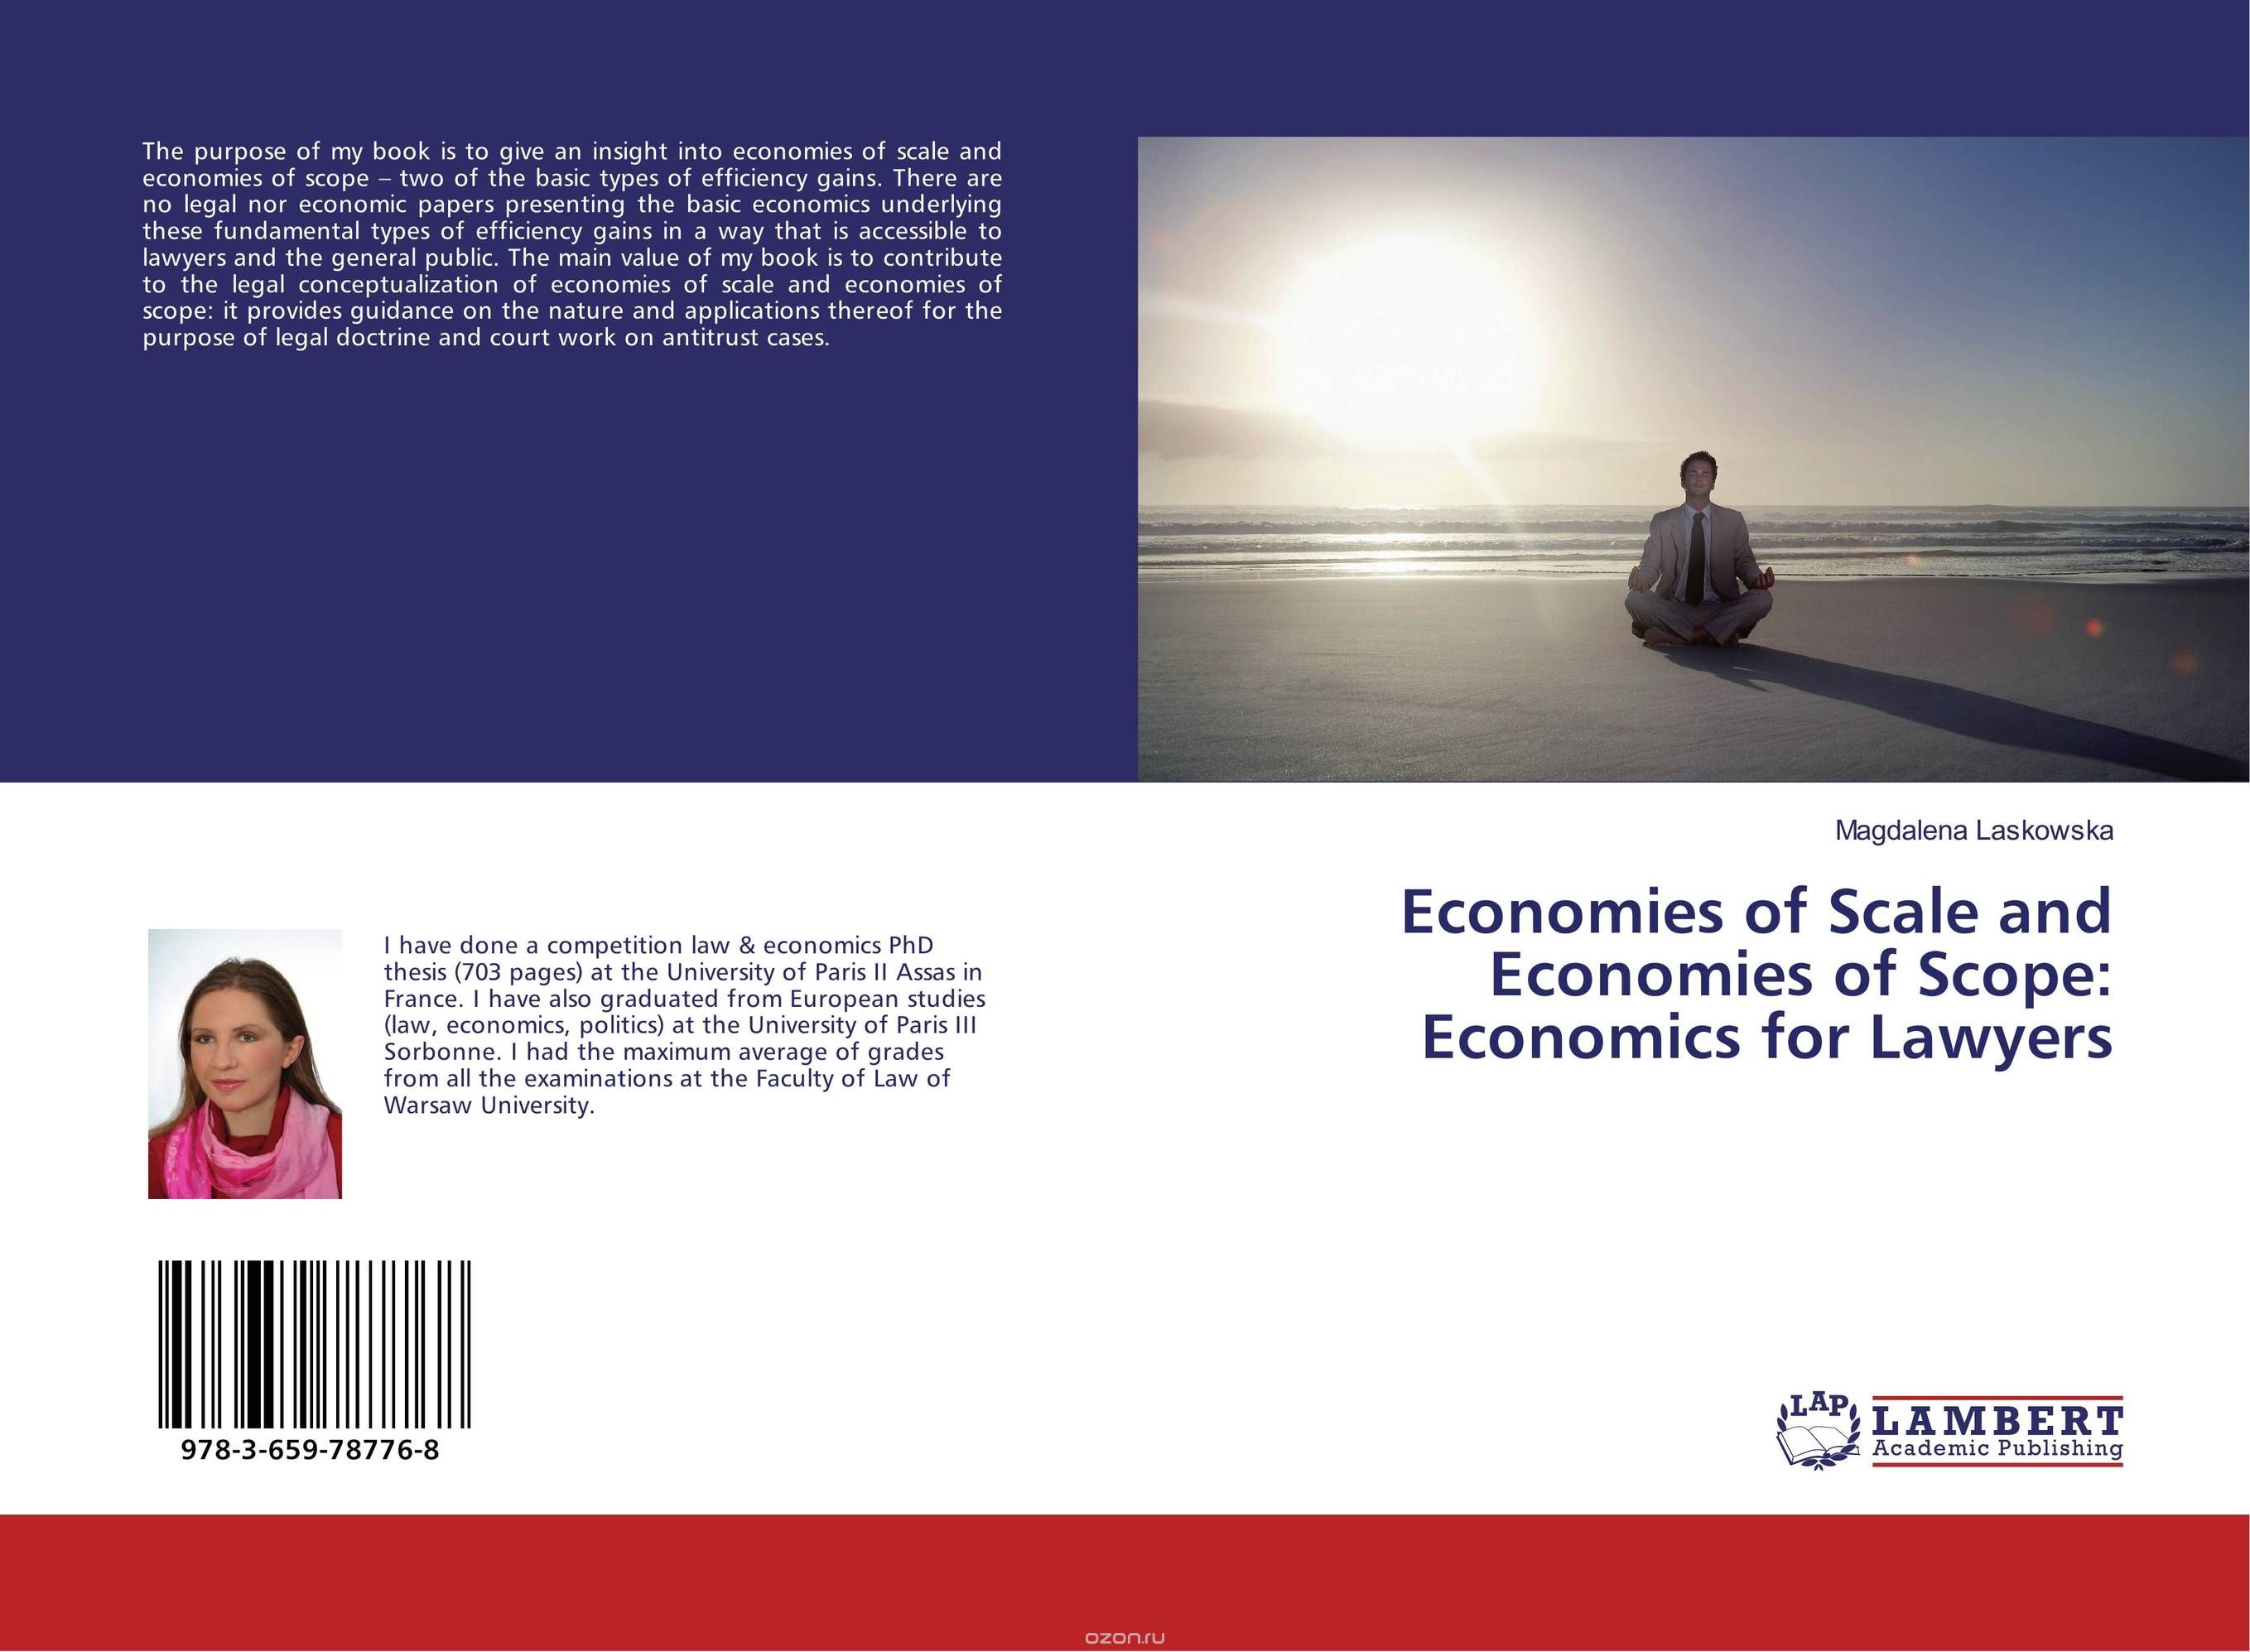 Скачать книгу "Economies of Scale and Economies of Scope: Economics for Lawyers"